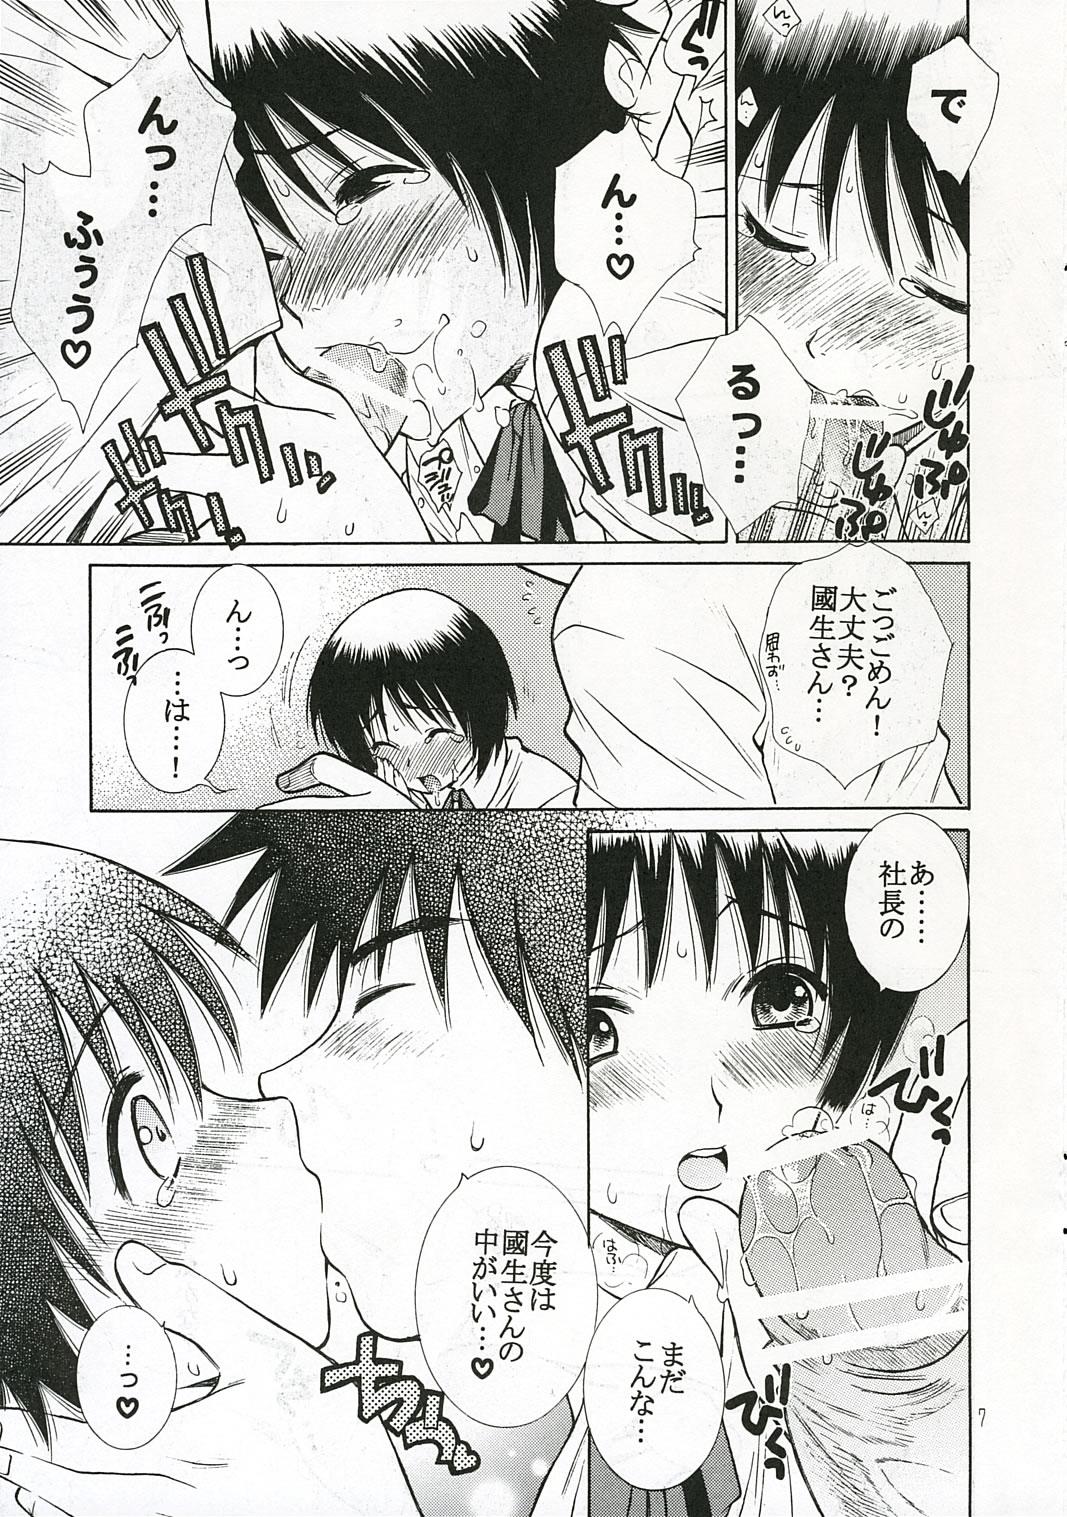 Adolescente (C68) [TOTSUGEKI WOLF(Yuhki Mitsuru) Kougu Gakuya e Youkoso. (Kowashiya Gamon) - Kowashiya gamon Asstomouth - Page 7